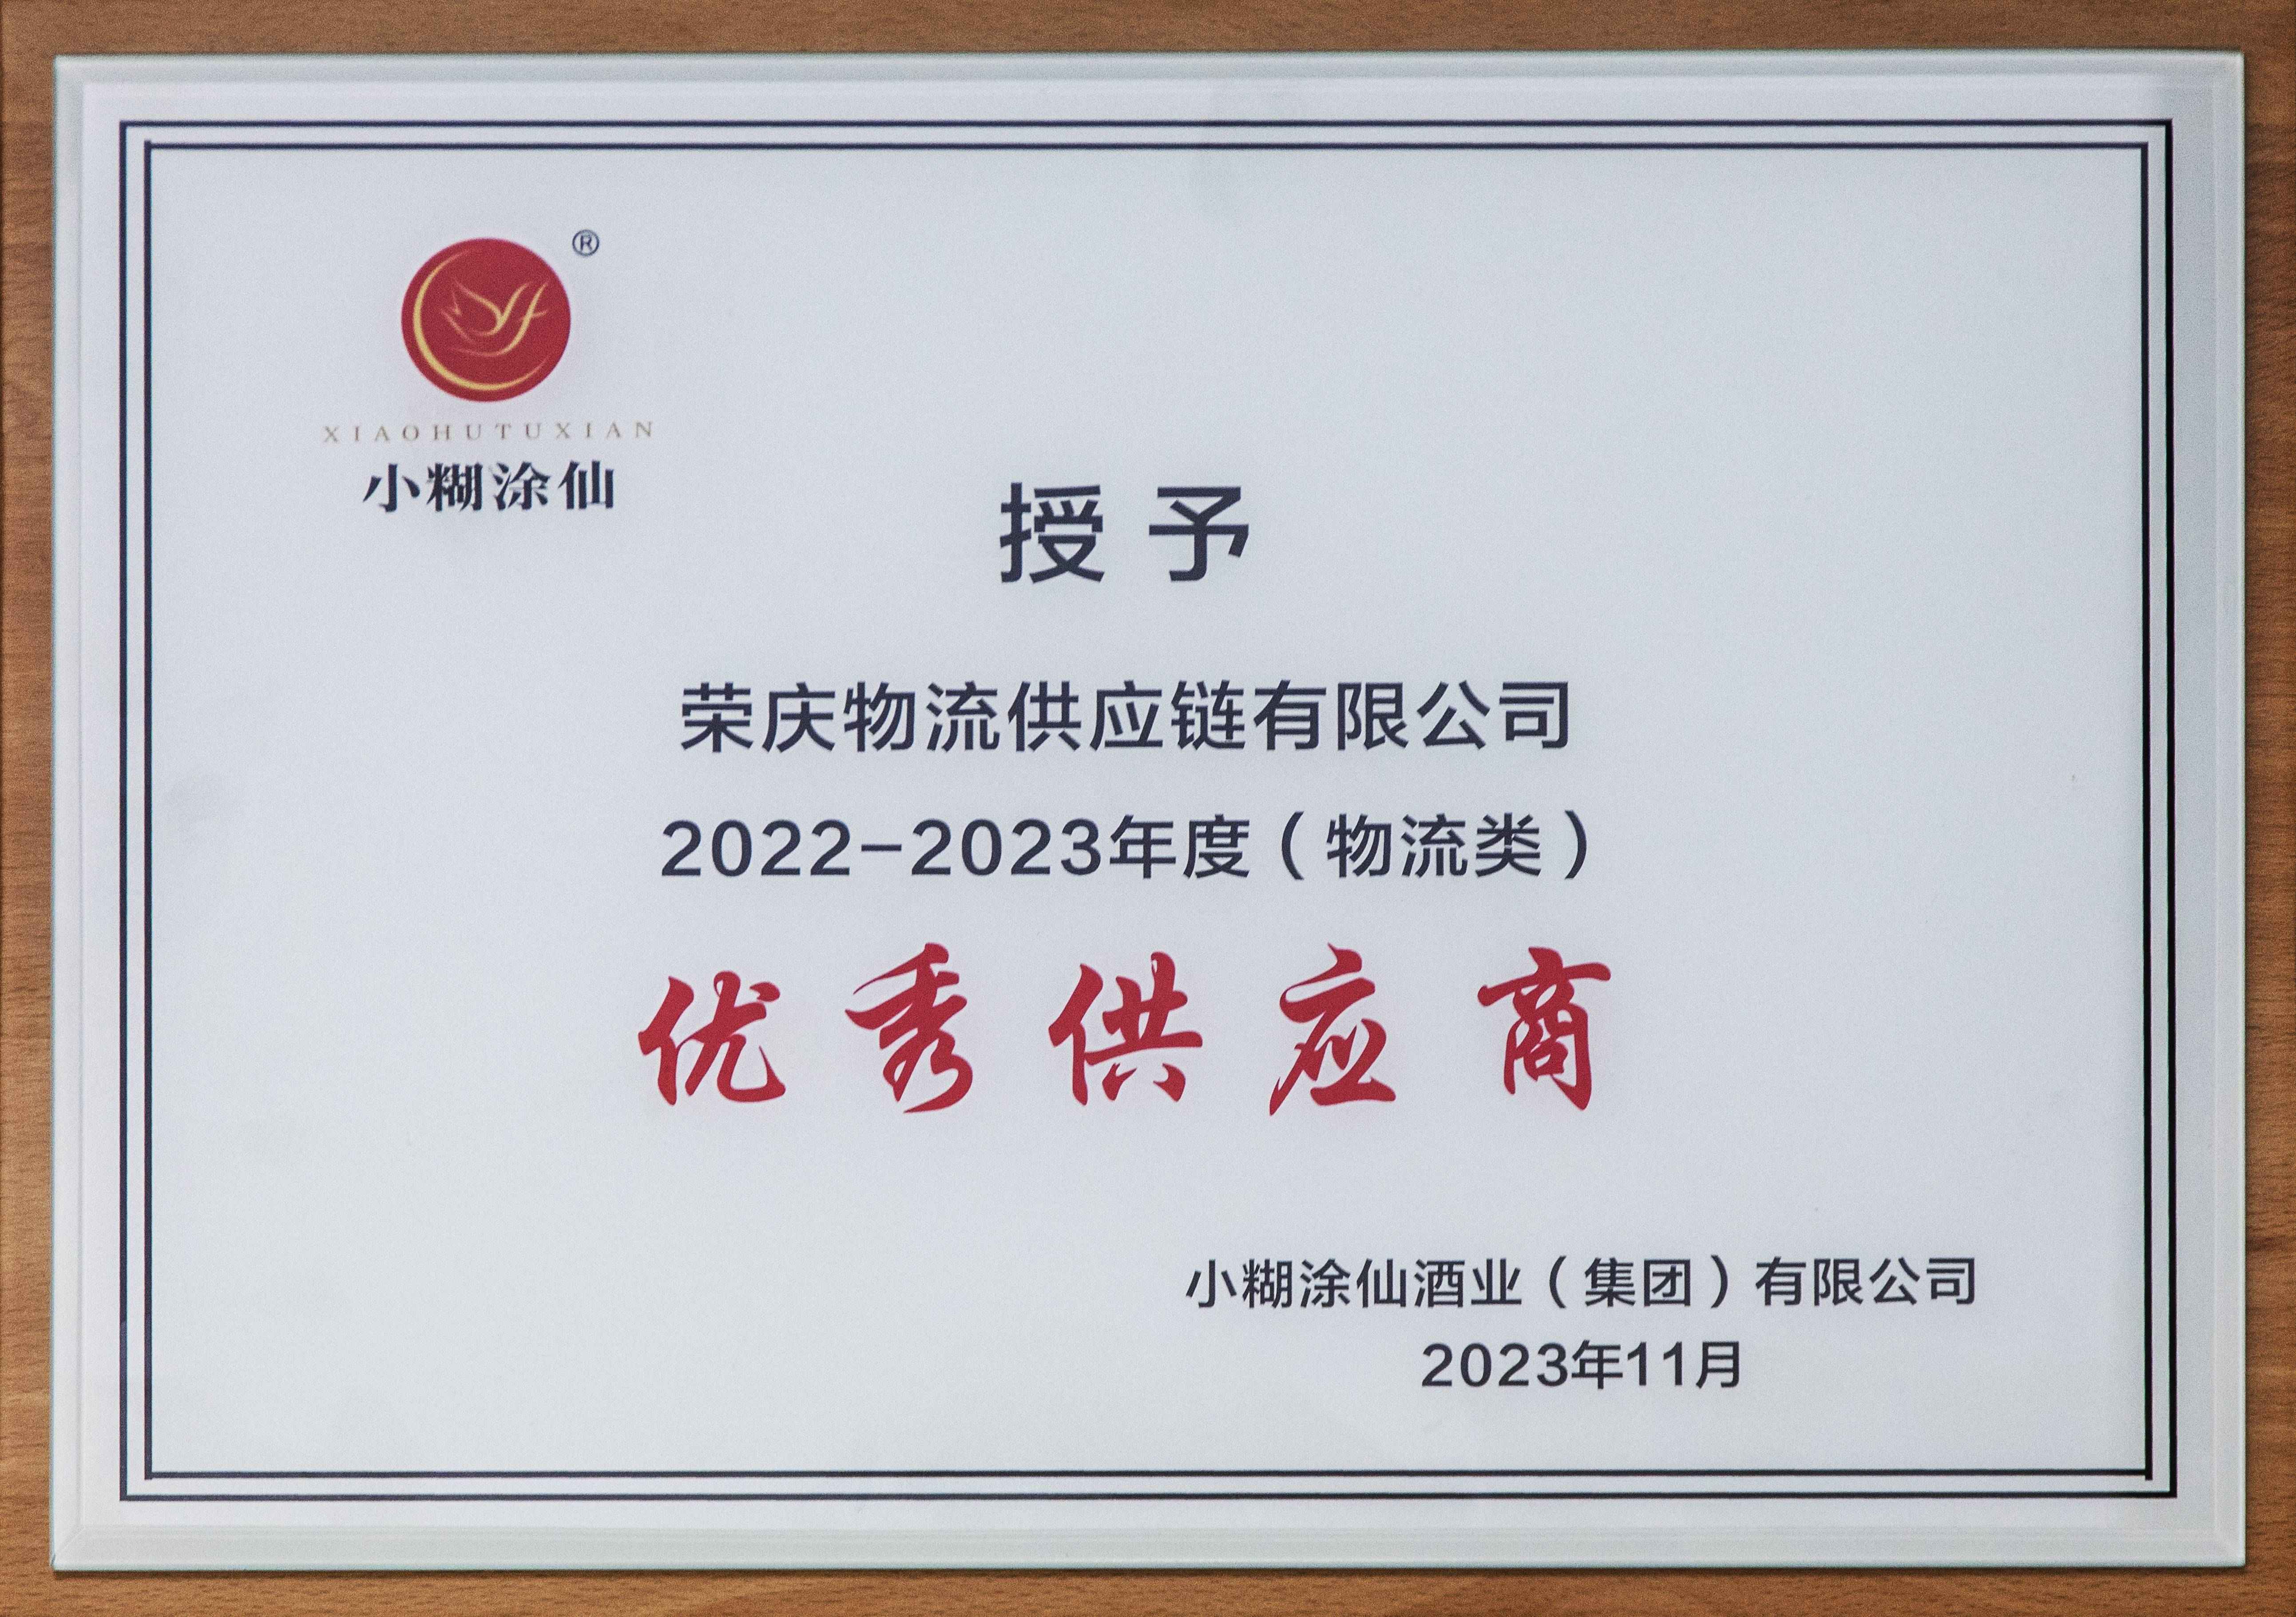 2022-2023年度优秀供应商.jpg